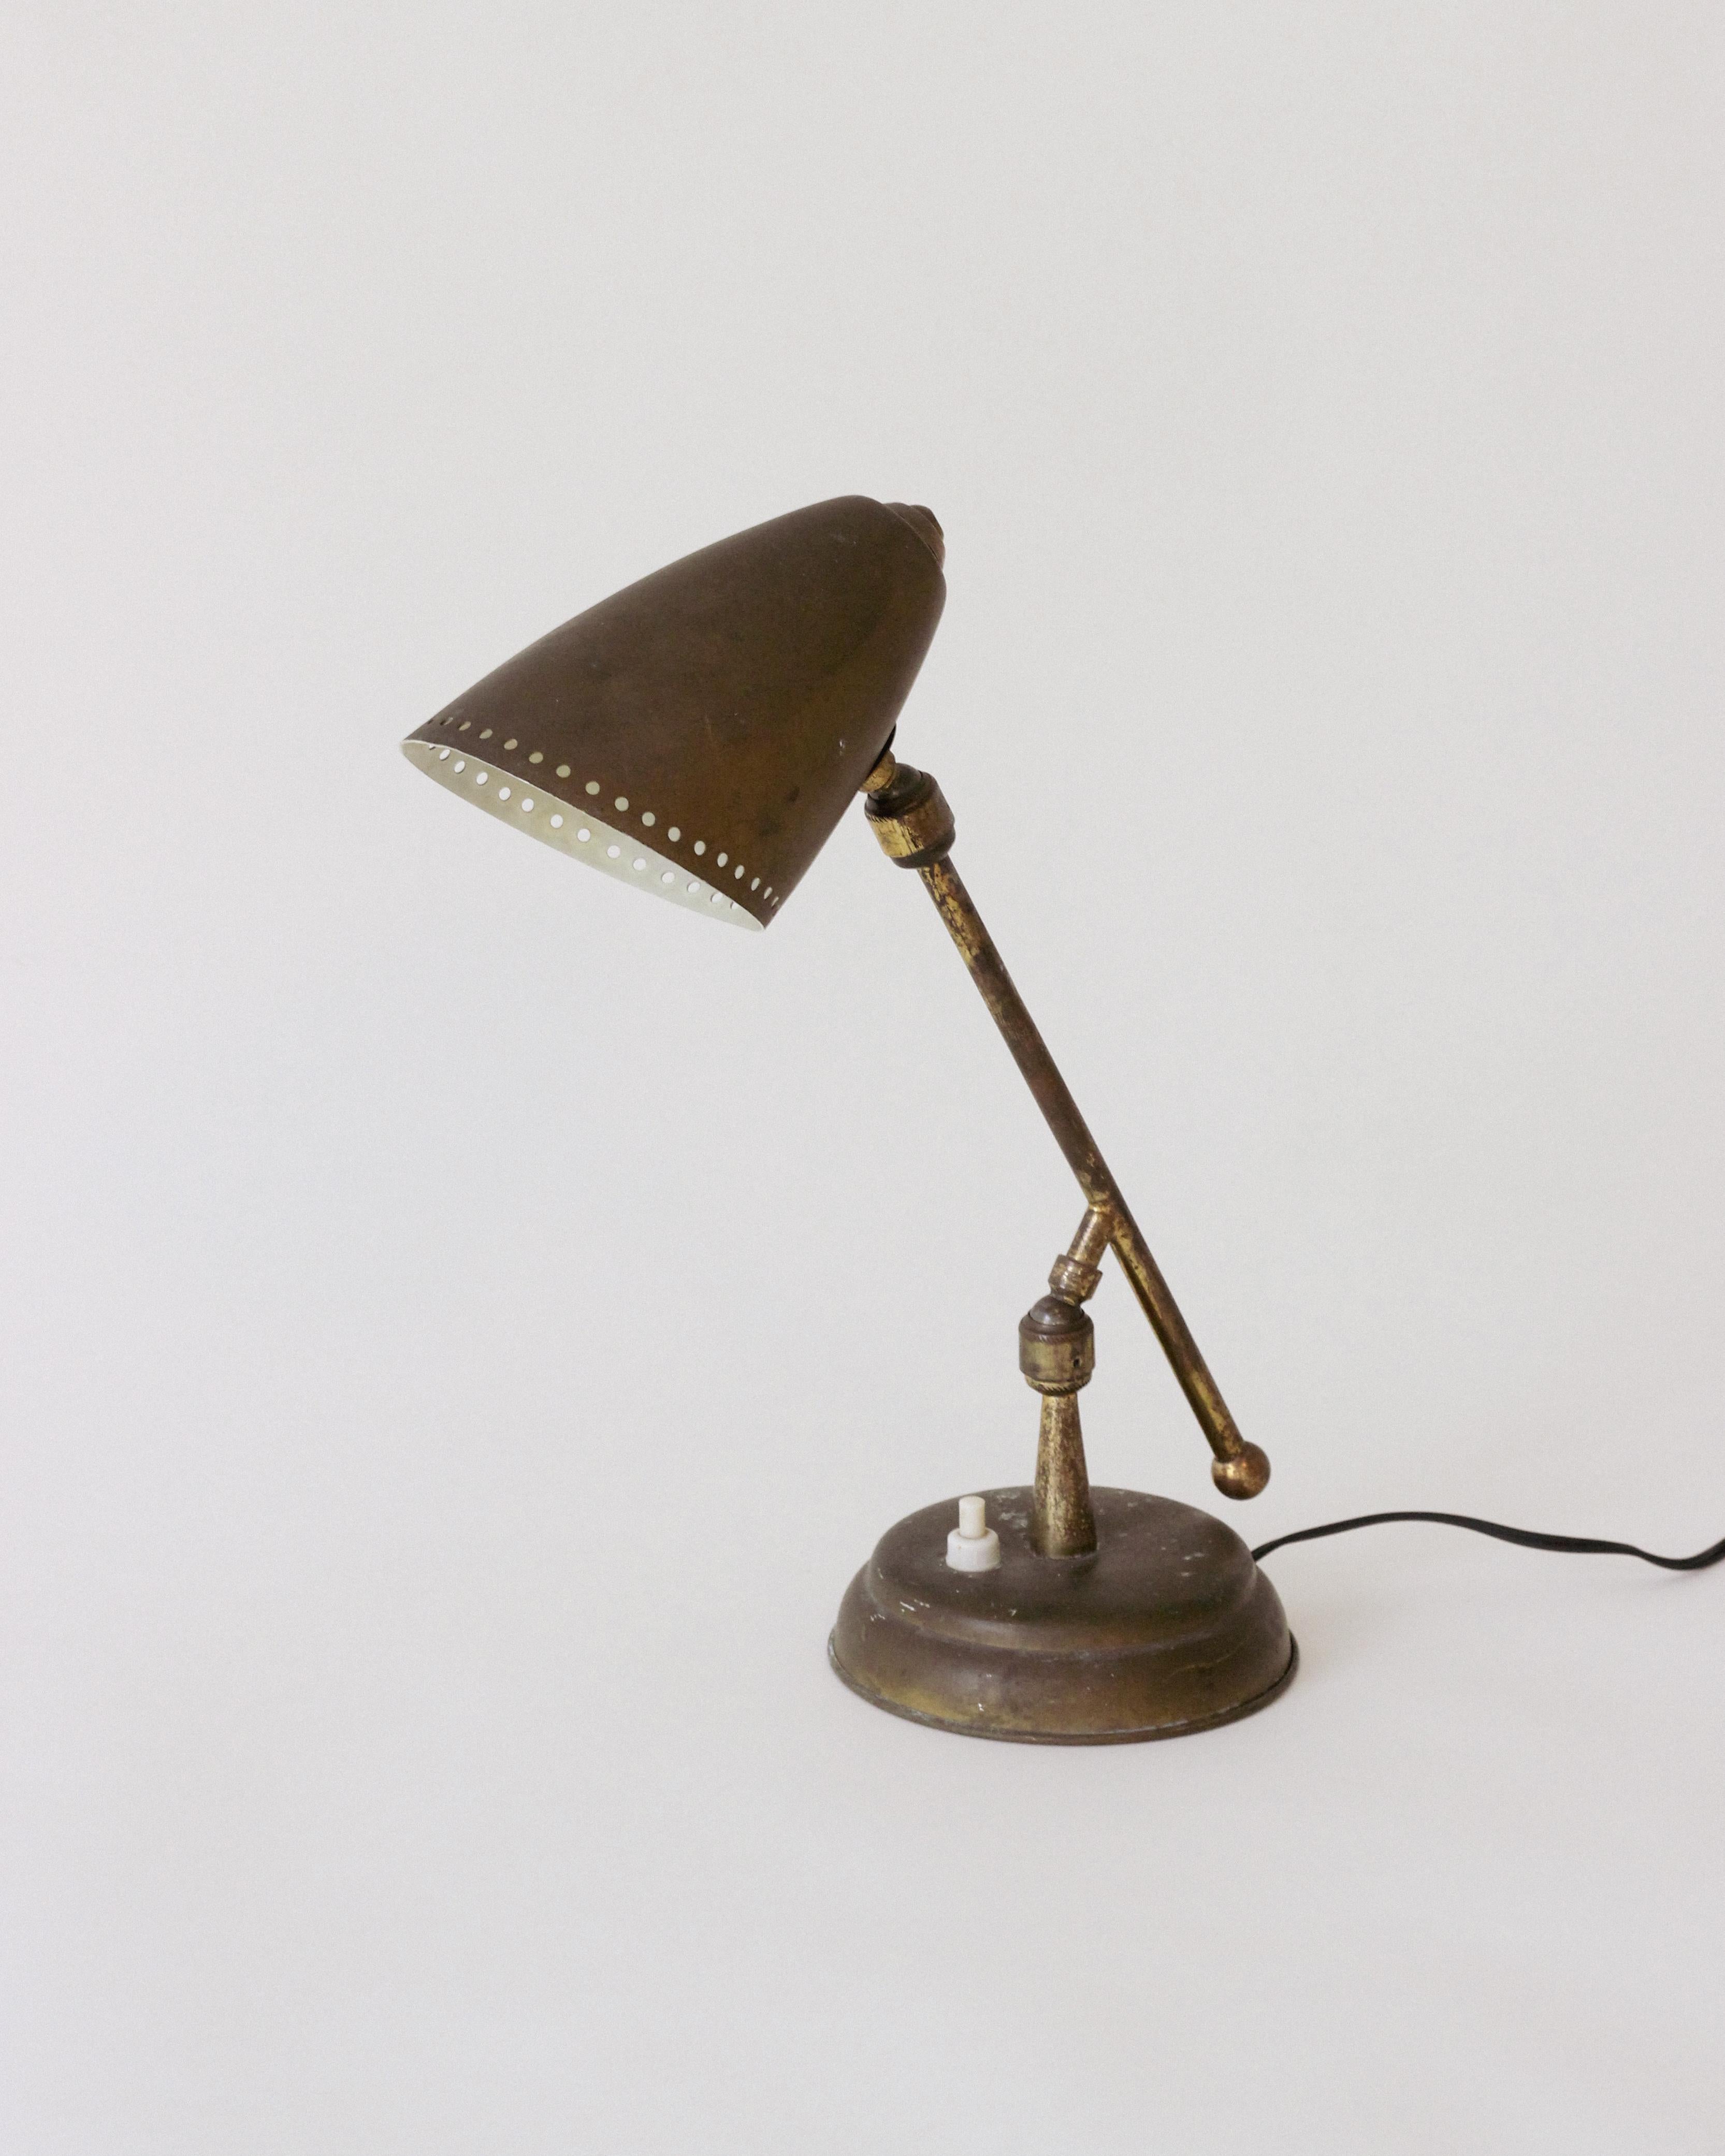 Lampe de table italienne vintage attribuée à Stilnovo 

Vers 1948,  Fabriqué en Italie  

Magnifique patine du laiton dans son état d'origine. Recâblage avec un cordon de soie noire aux normes américaines. 

Environ 11,5